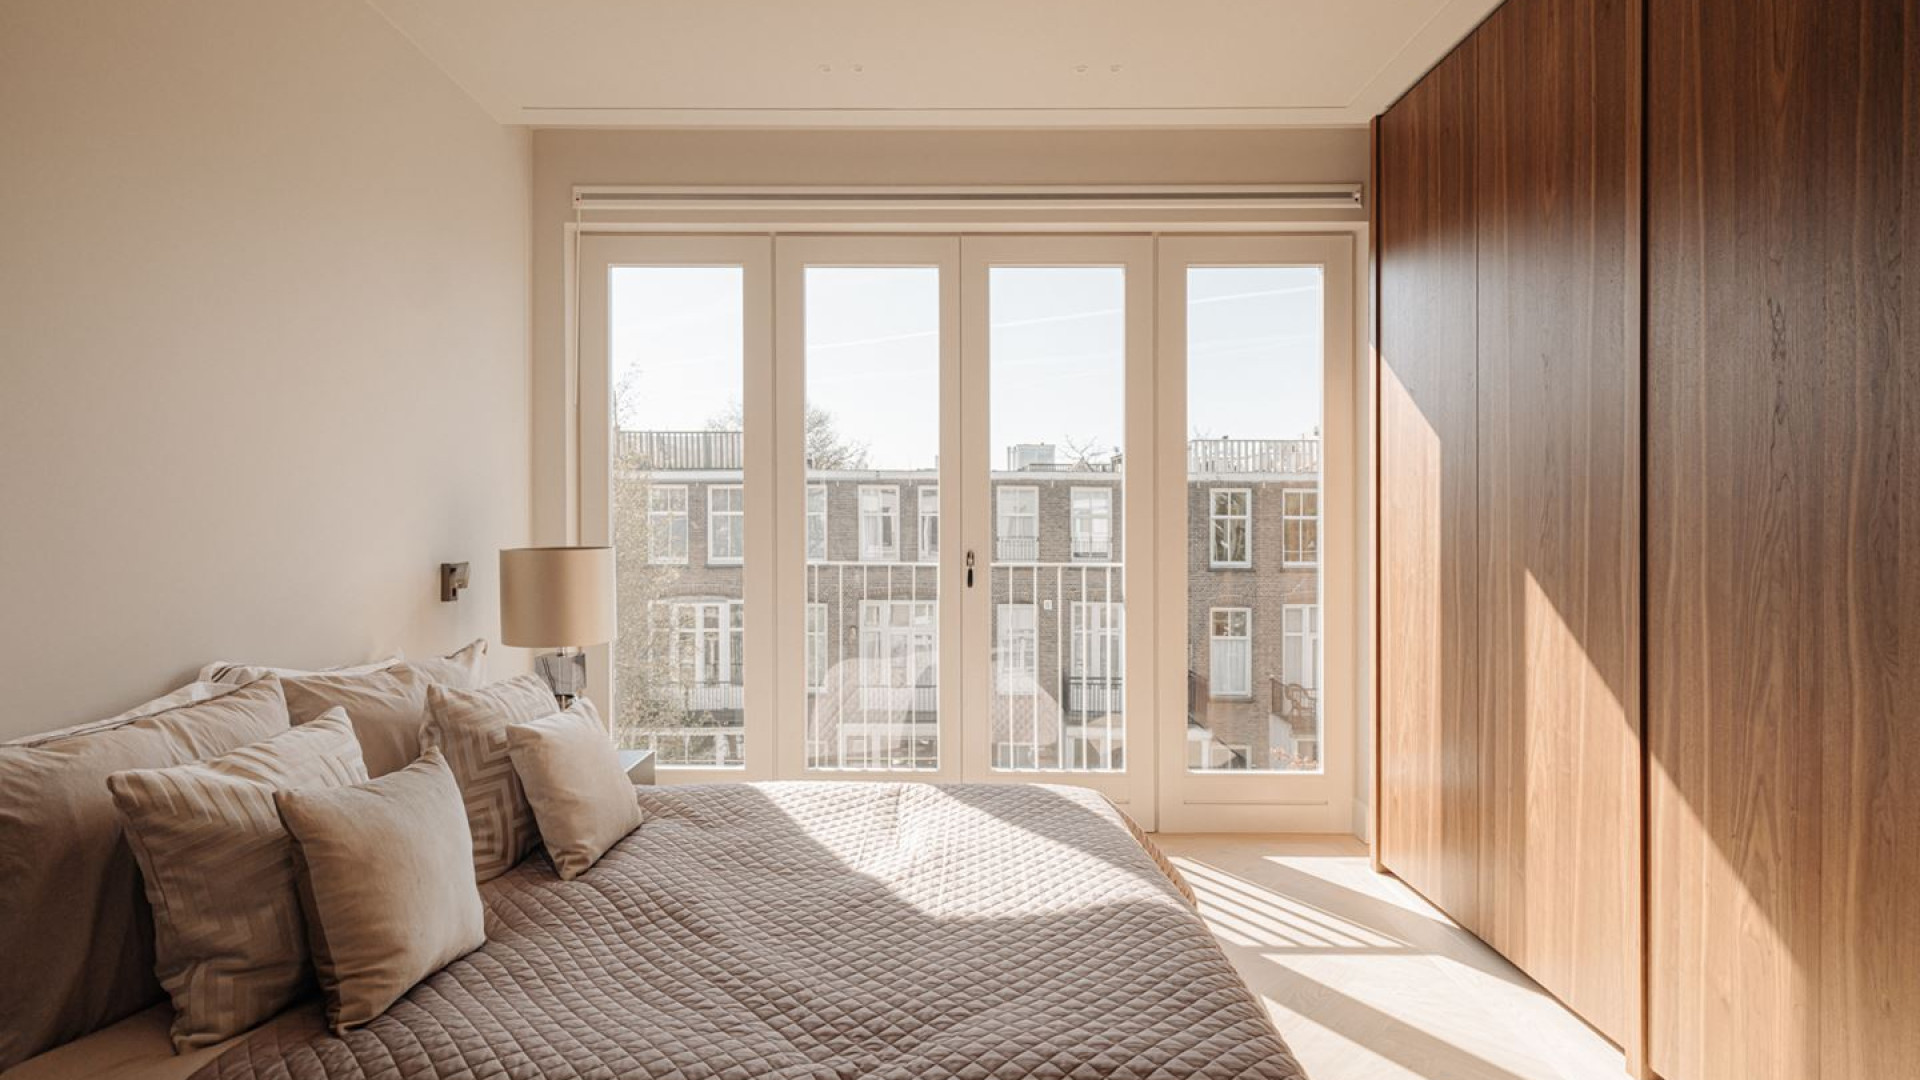 Johnny de Mol koopt dit prachtige penthouse in Amsterdam vlakbij ex geliefde Chantal Janzen. Zie foto's 5